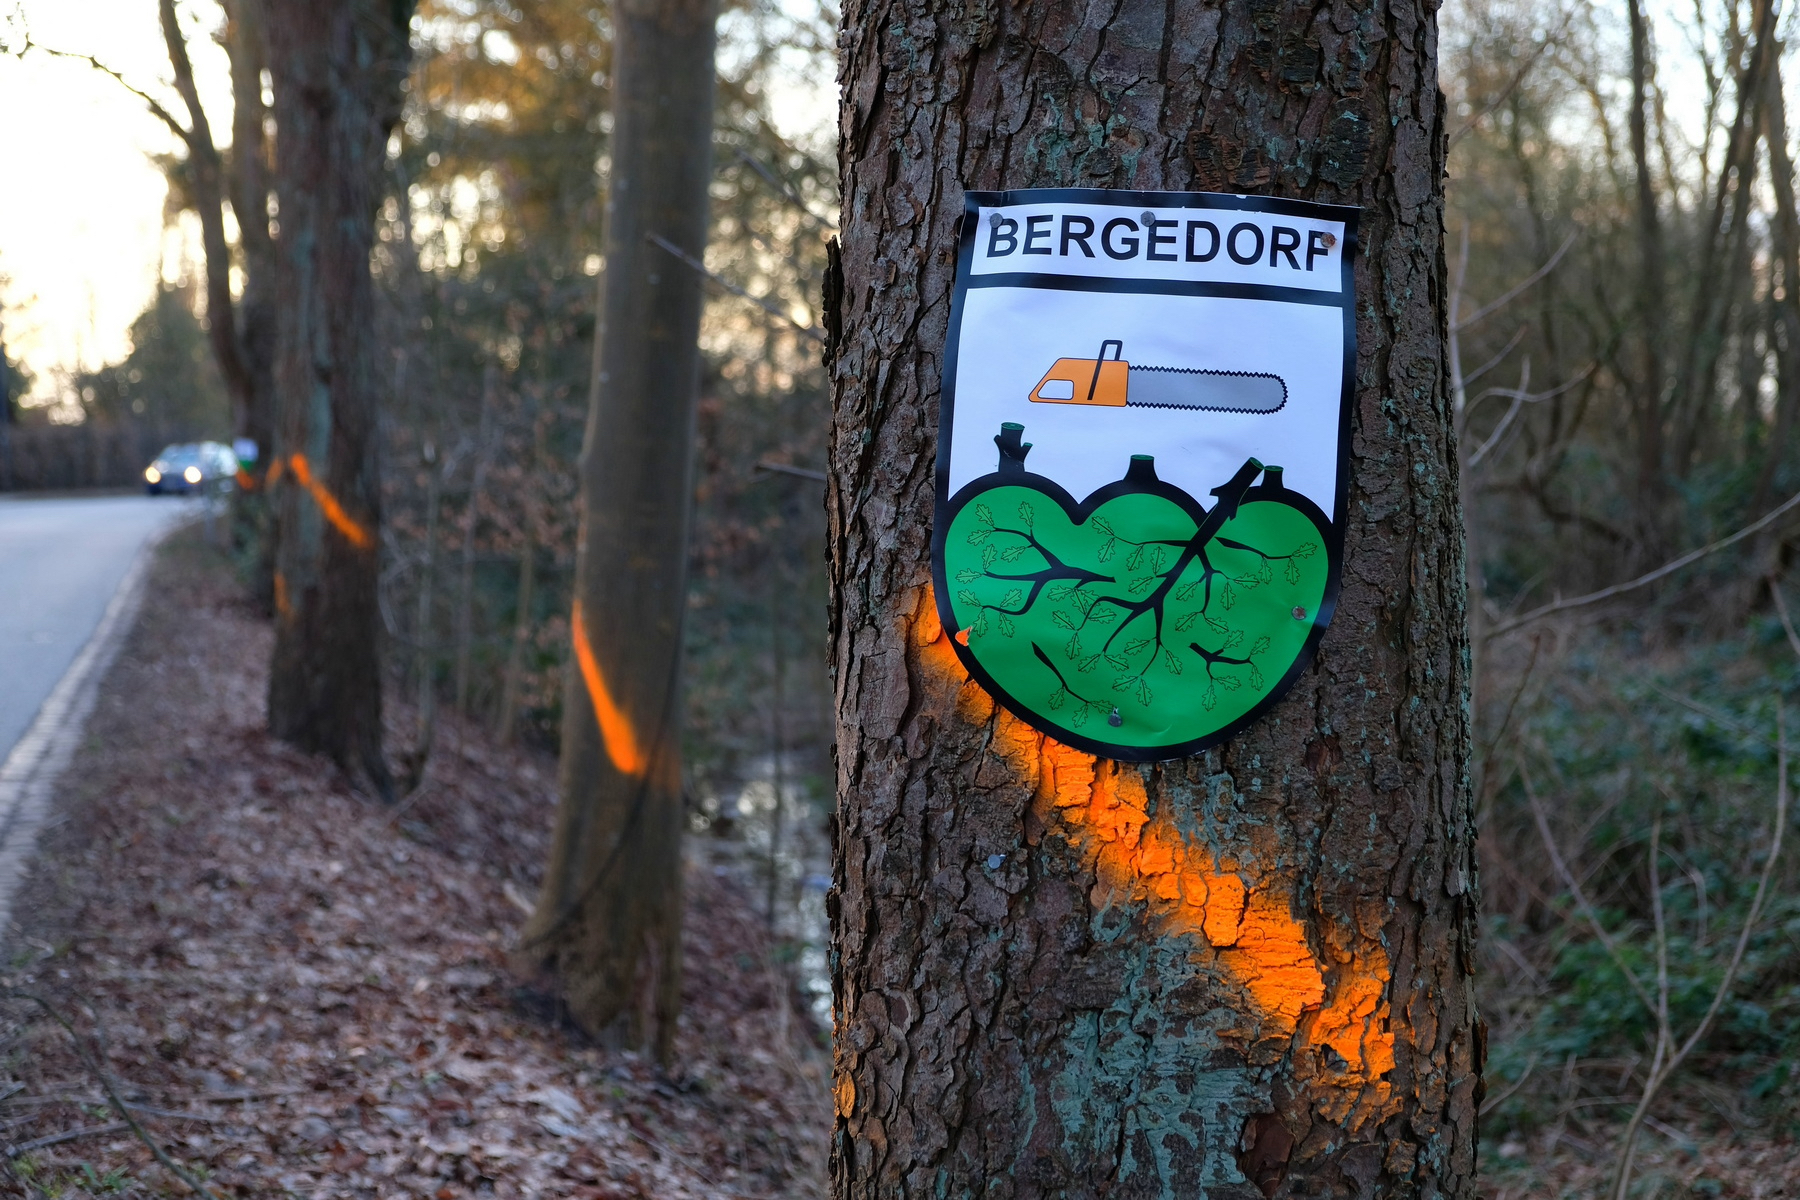 Mehrere Bäume. Auf ihnen ein heraldisches Wappen. Das Wappen zeigt eine Kettensäge und die Aufschrift "Bergedorf"